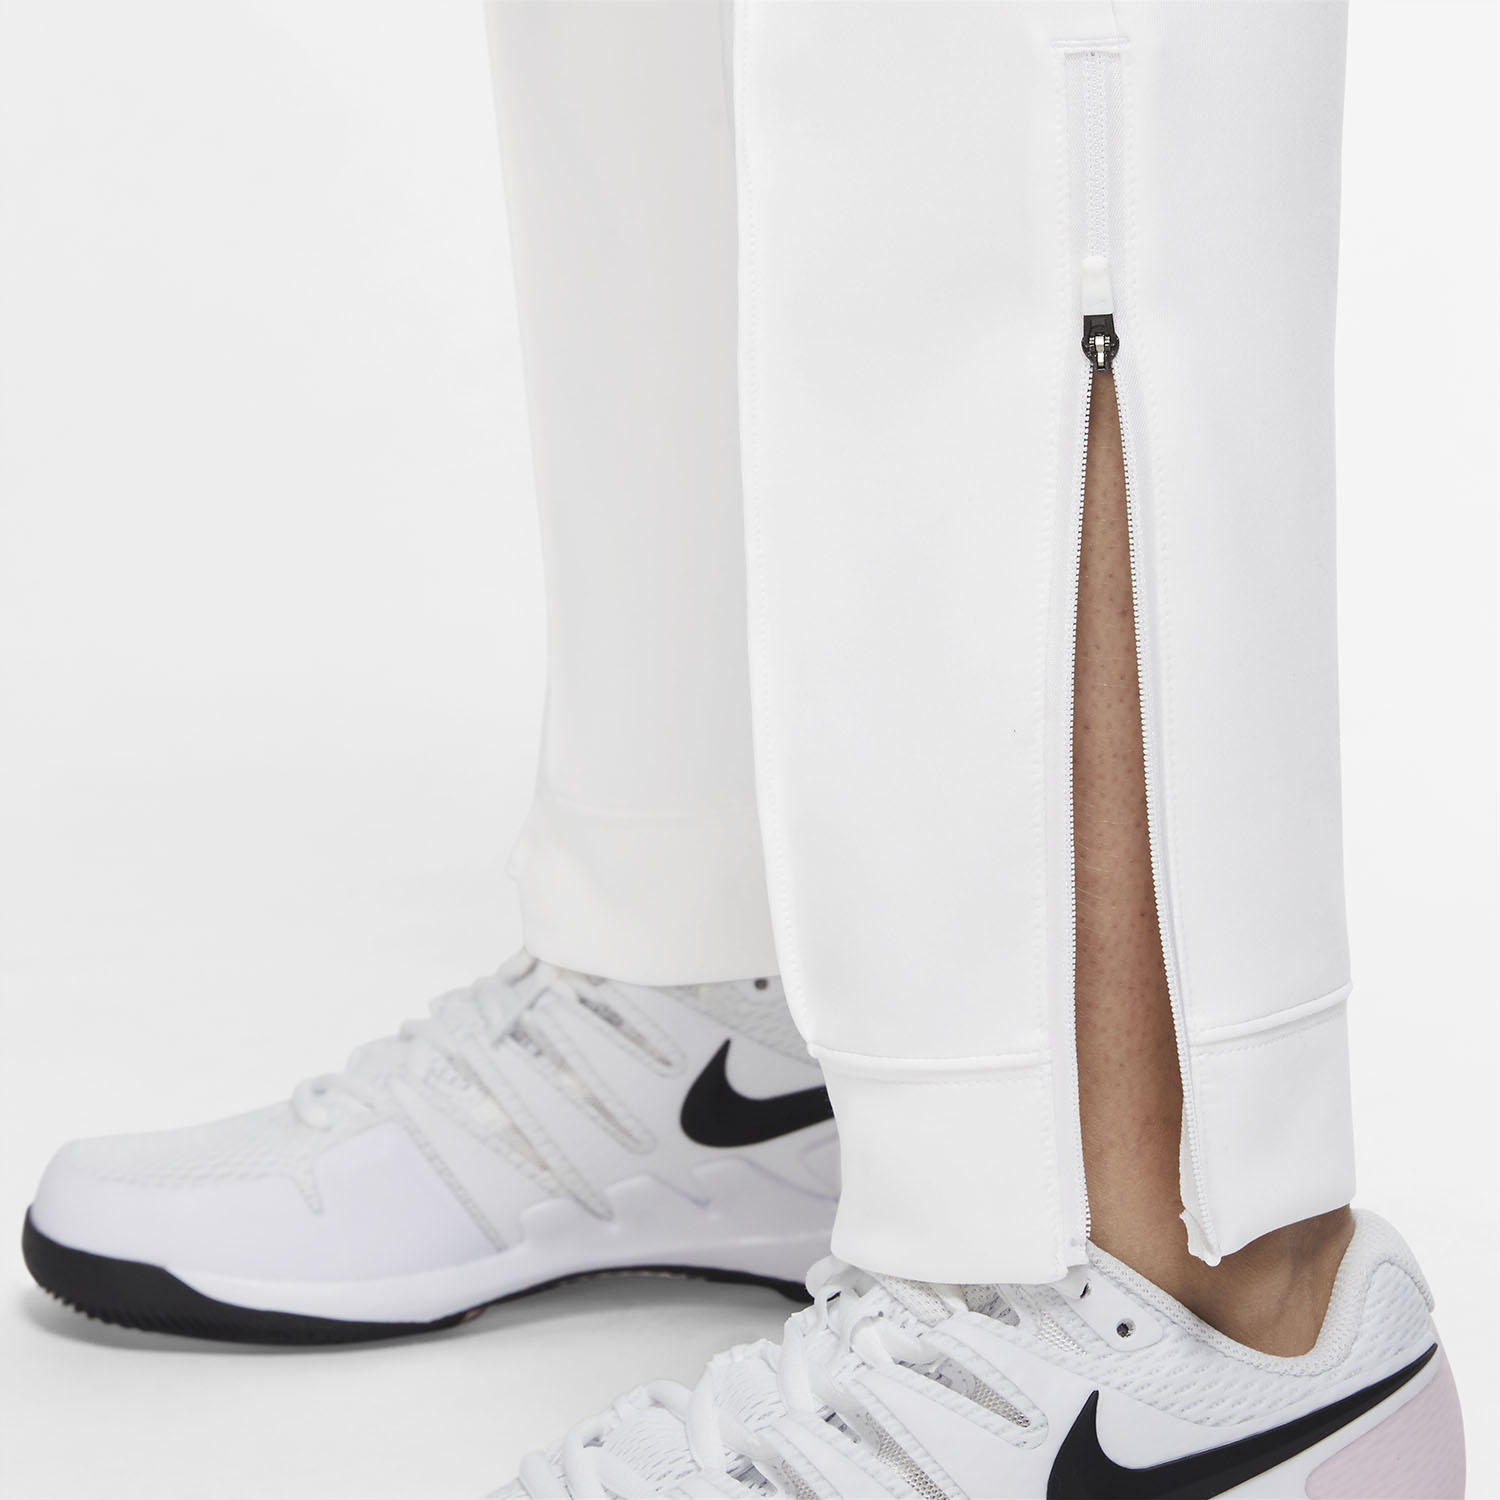 Nike Heritage Knit Pantalones - White